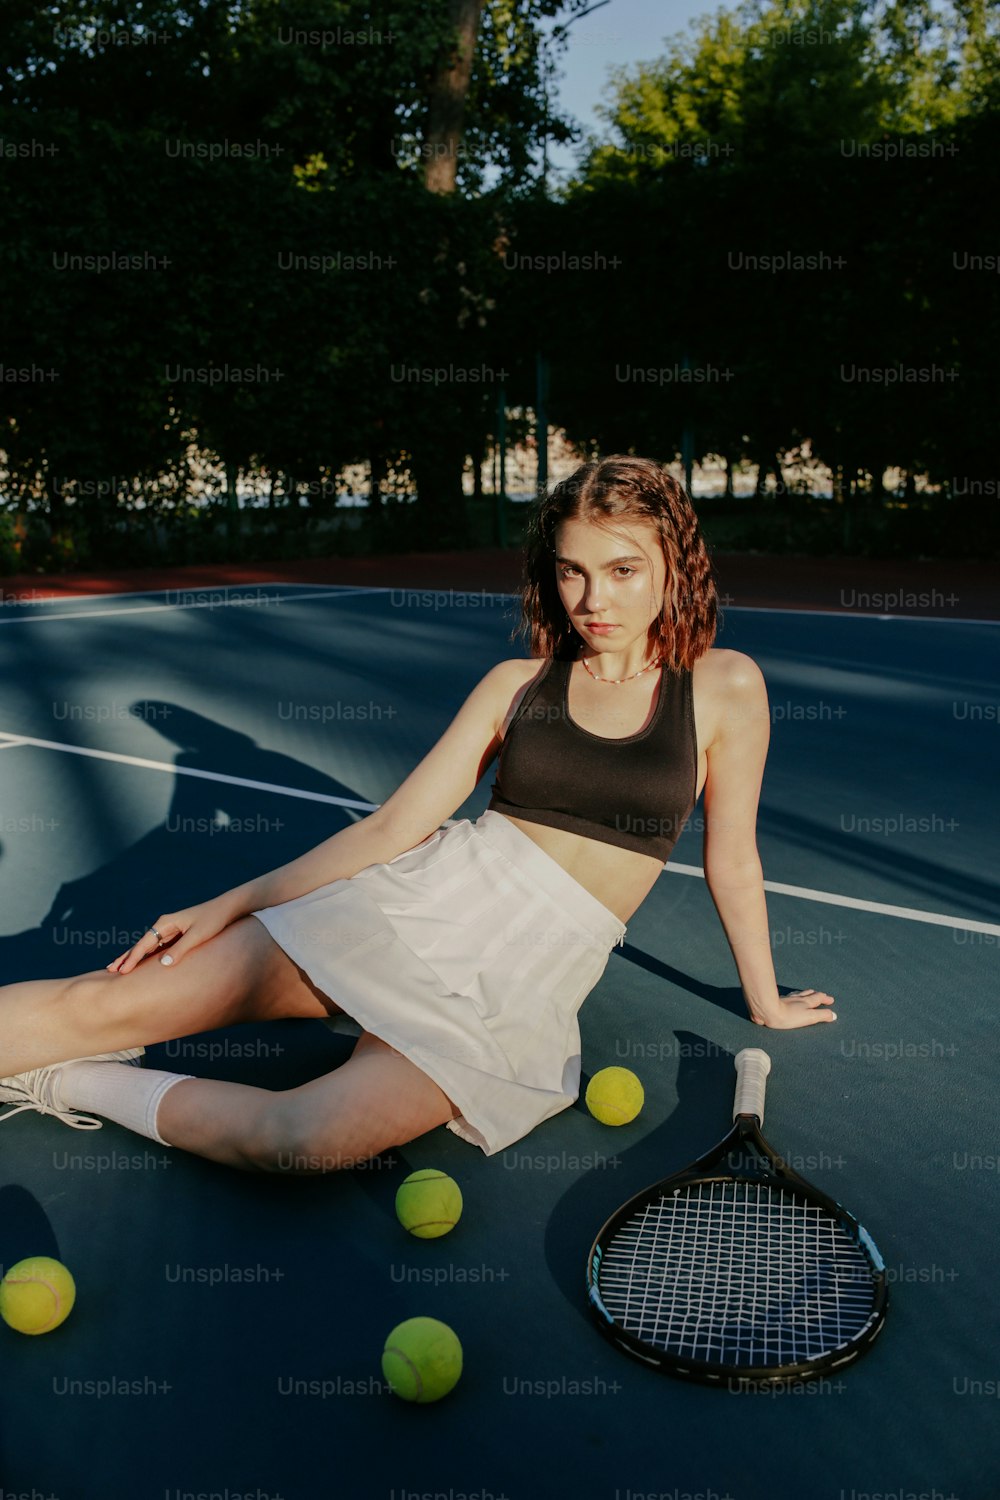 테니스 라켓을 들고 테니스 코트에 앉아 있는 여자